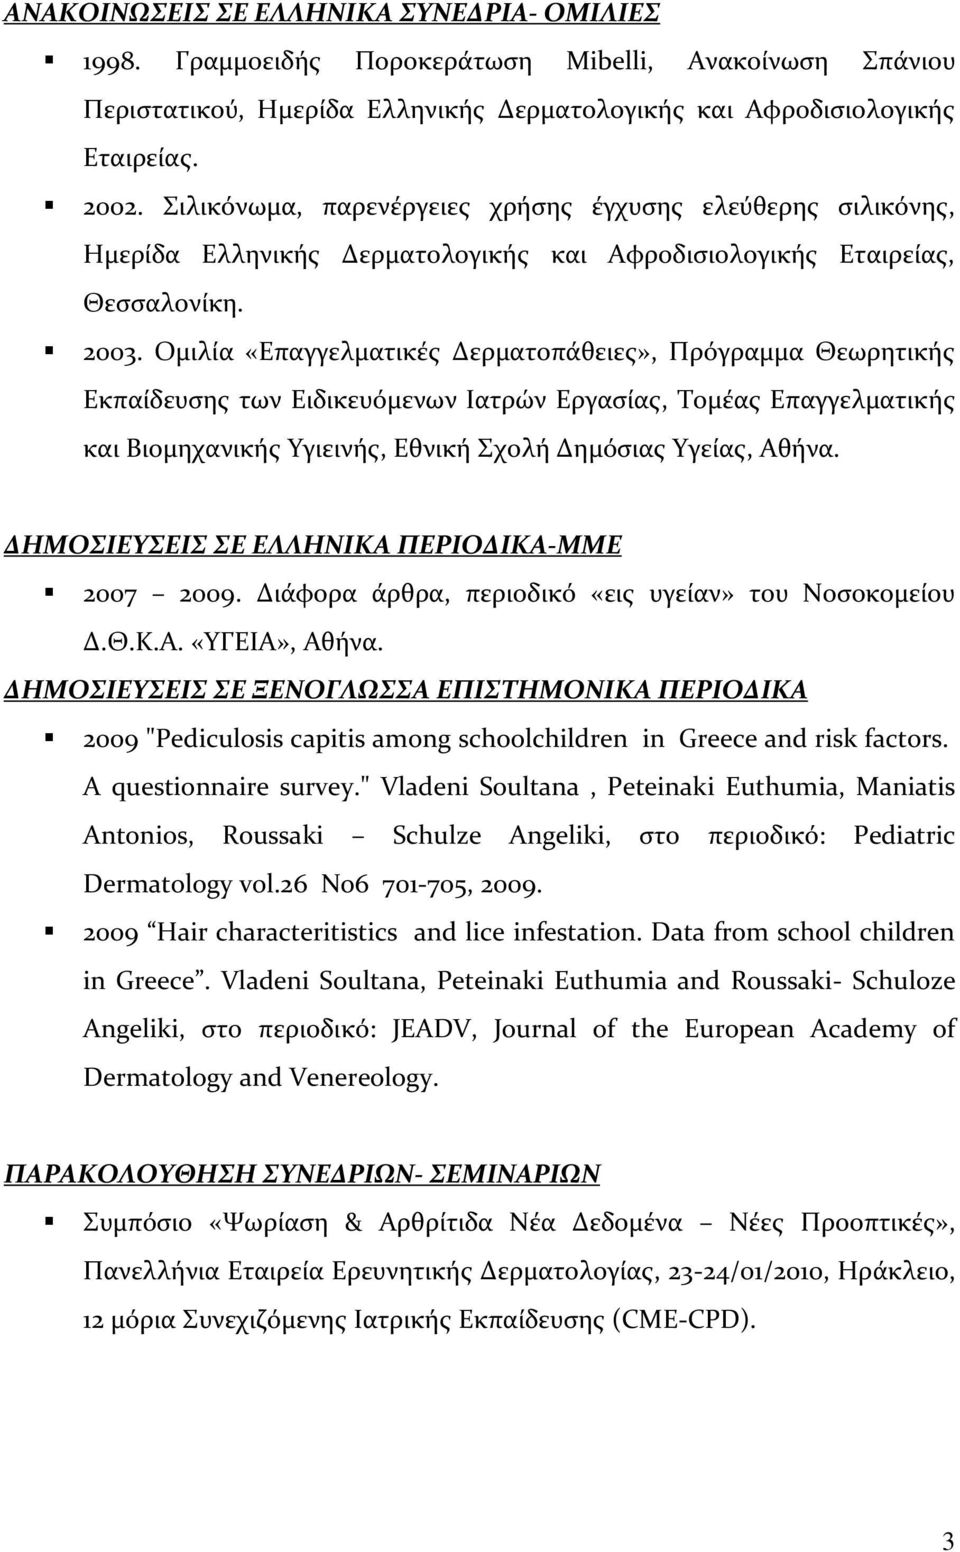 Ομιλία «Επαγγελματικές Δερματοπάθειες», Πρόγραμμα Θεωρητικής Εκπαίδευσης των Ειδικευόμενων Ιατρών Εργασίας, Τομέας Επαγγελματικής και Βιομηχανικής Υγιεινής, Εθνική Σχολή Δημόσιας Υγείας, Αθήνα.